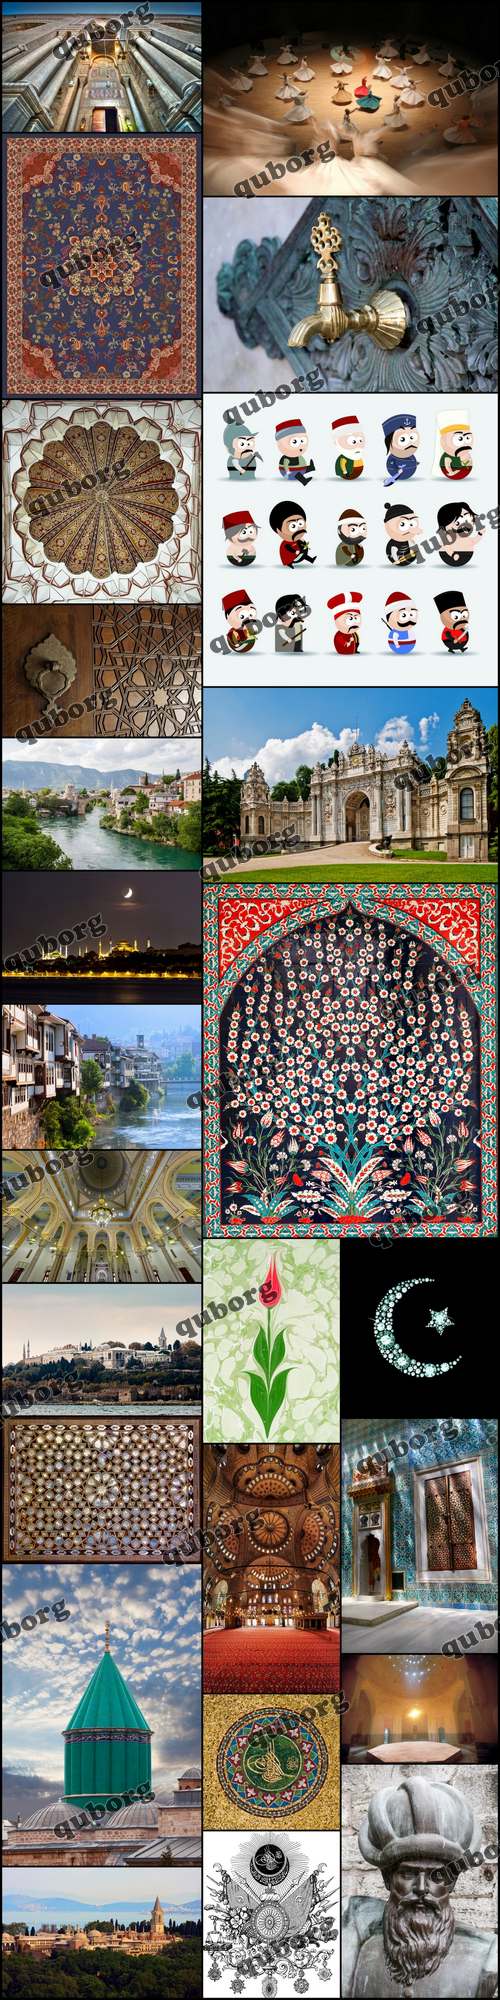 Stock Photos - Ottoman Culture